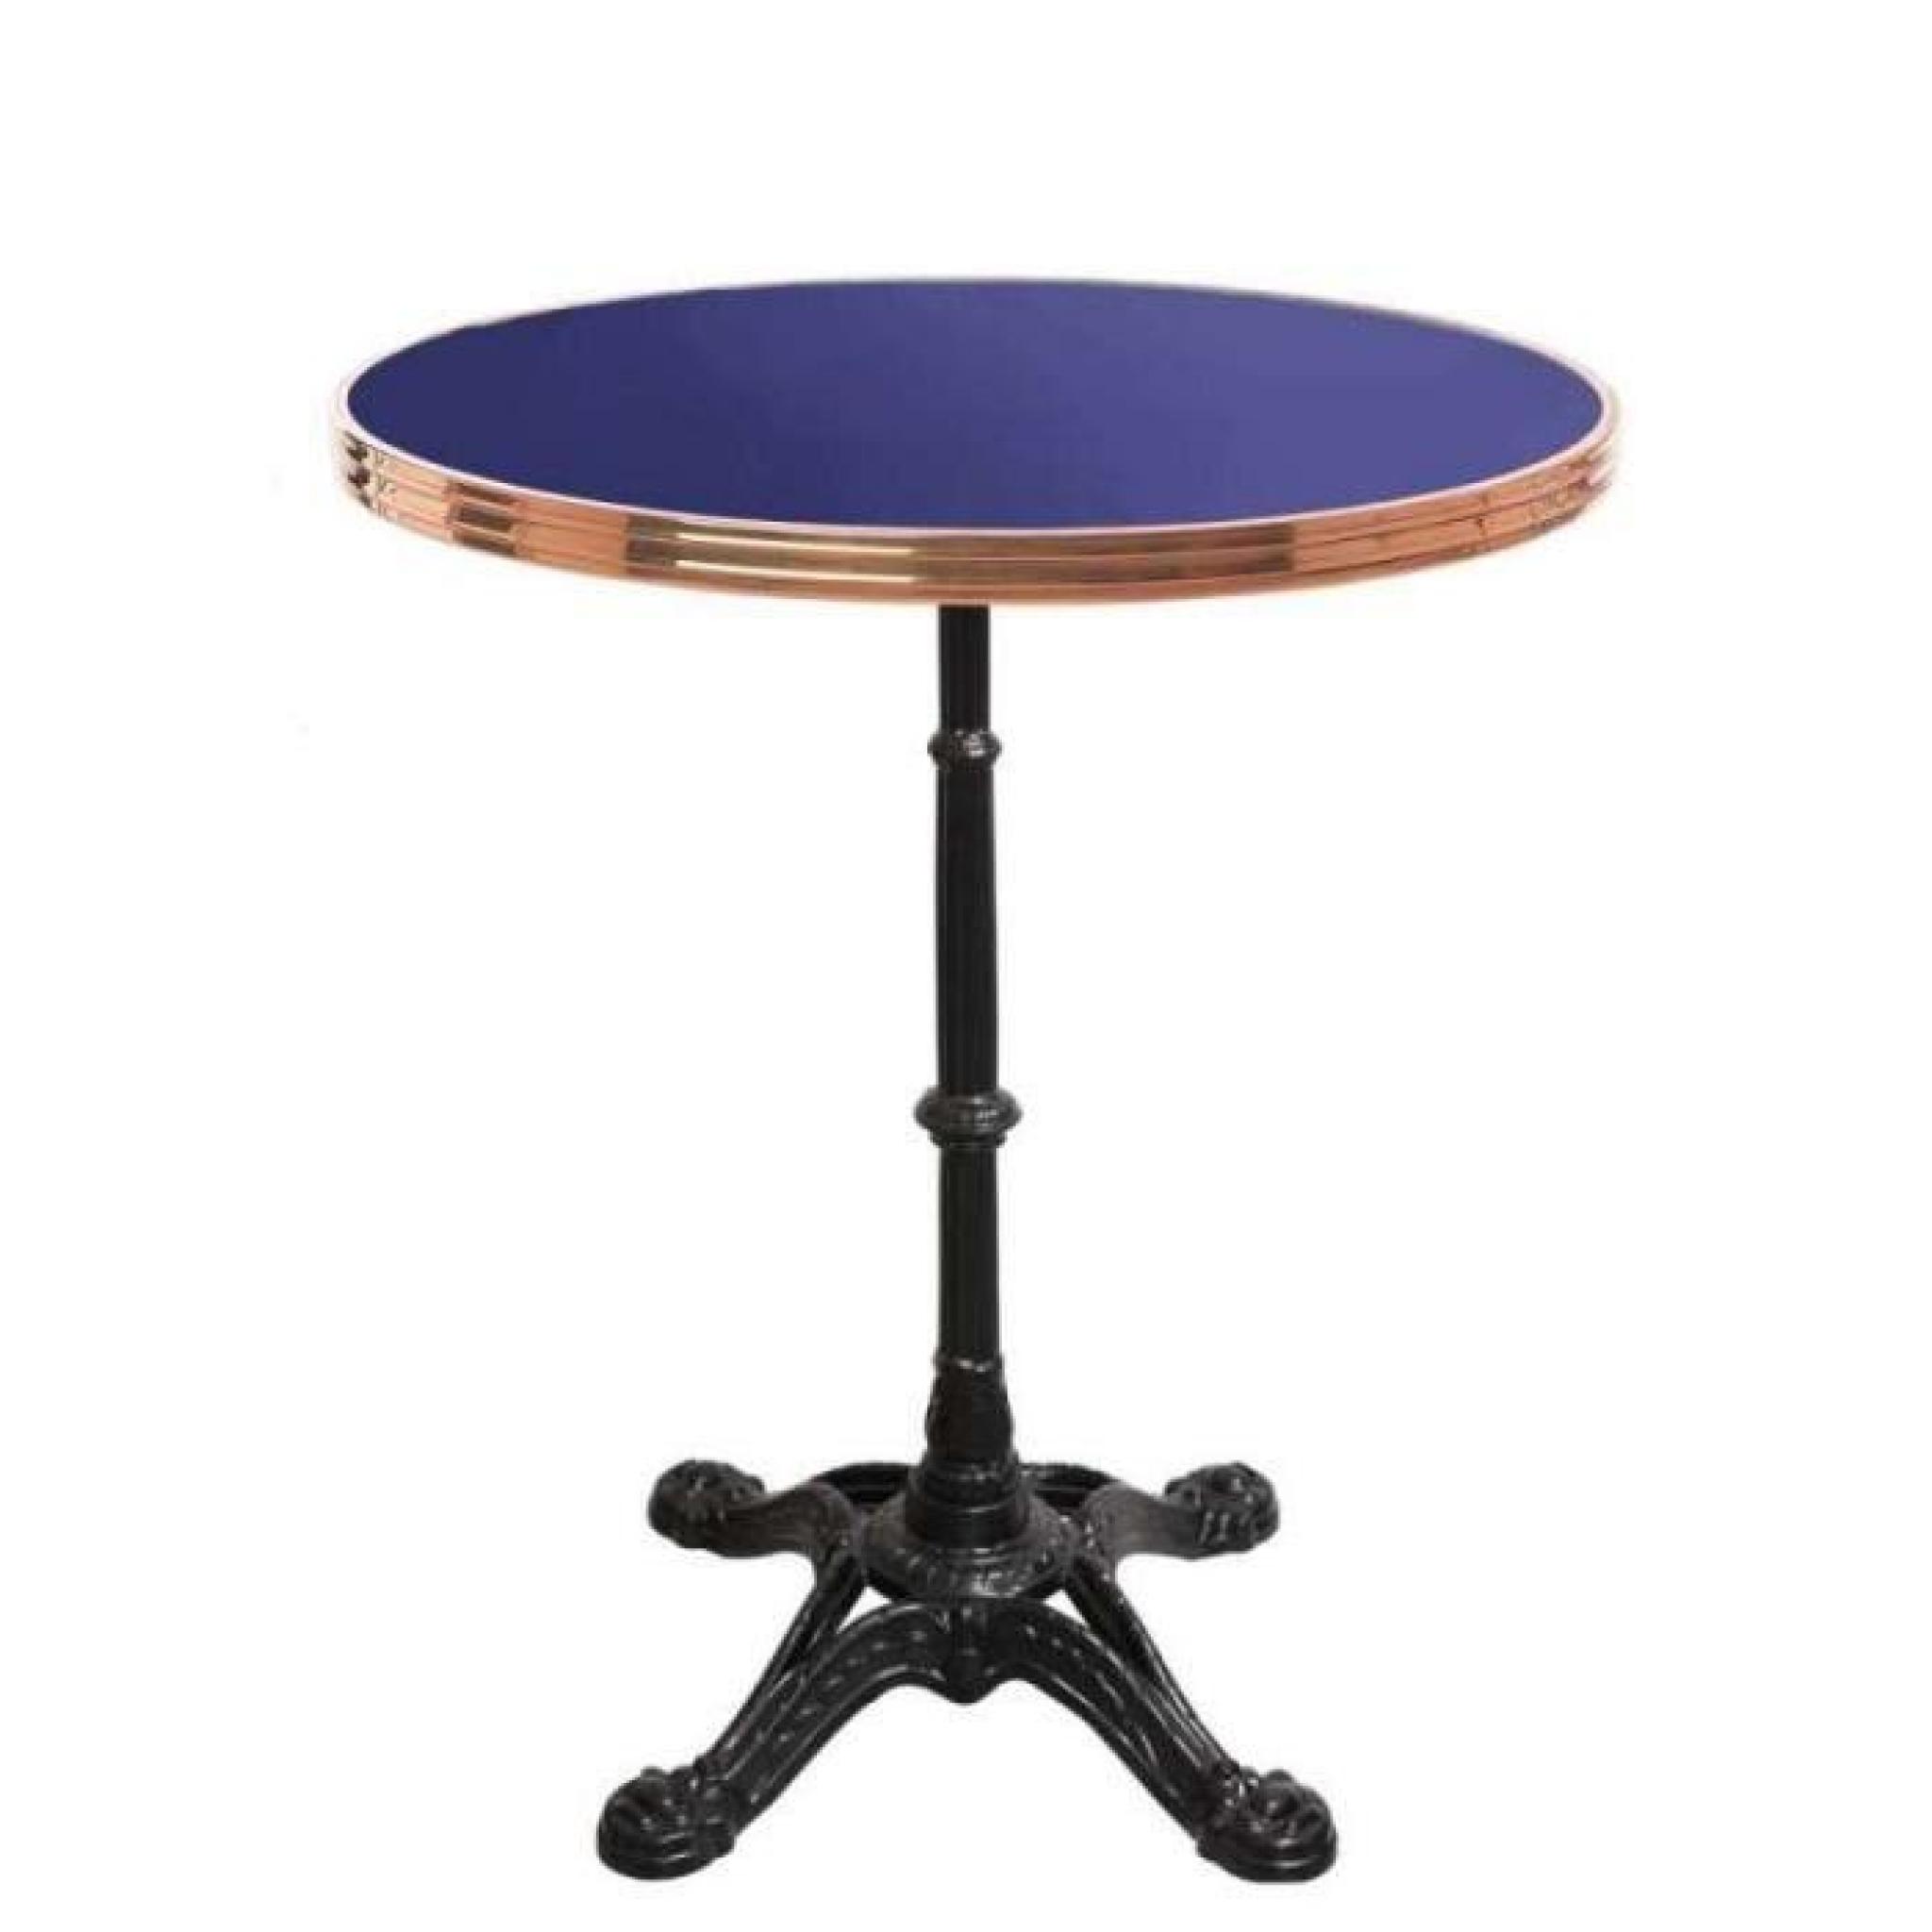 table bistrot ronde bleu nocturne avec cerclage en inox - pied eiffel 3 branches - h70 x d50 cm